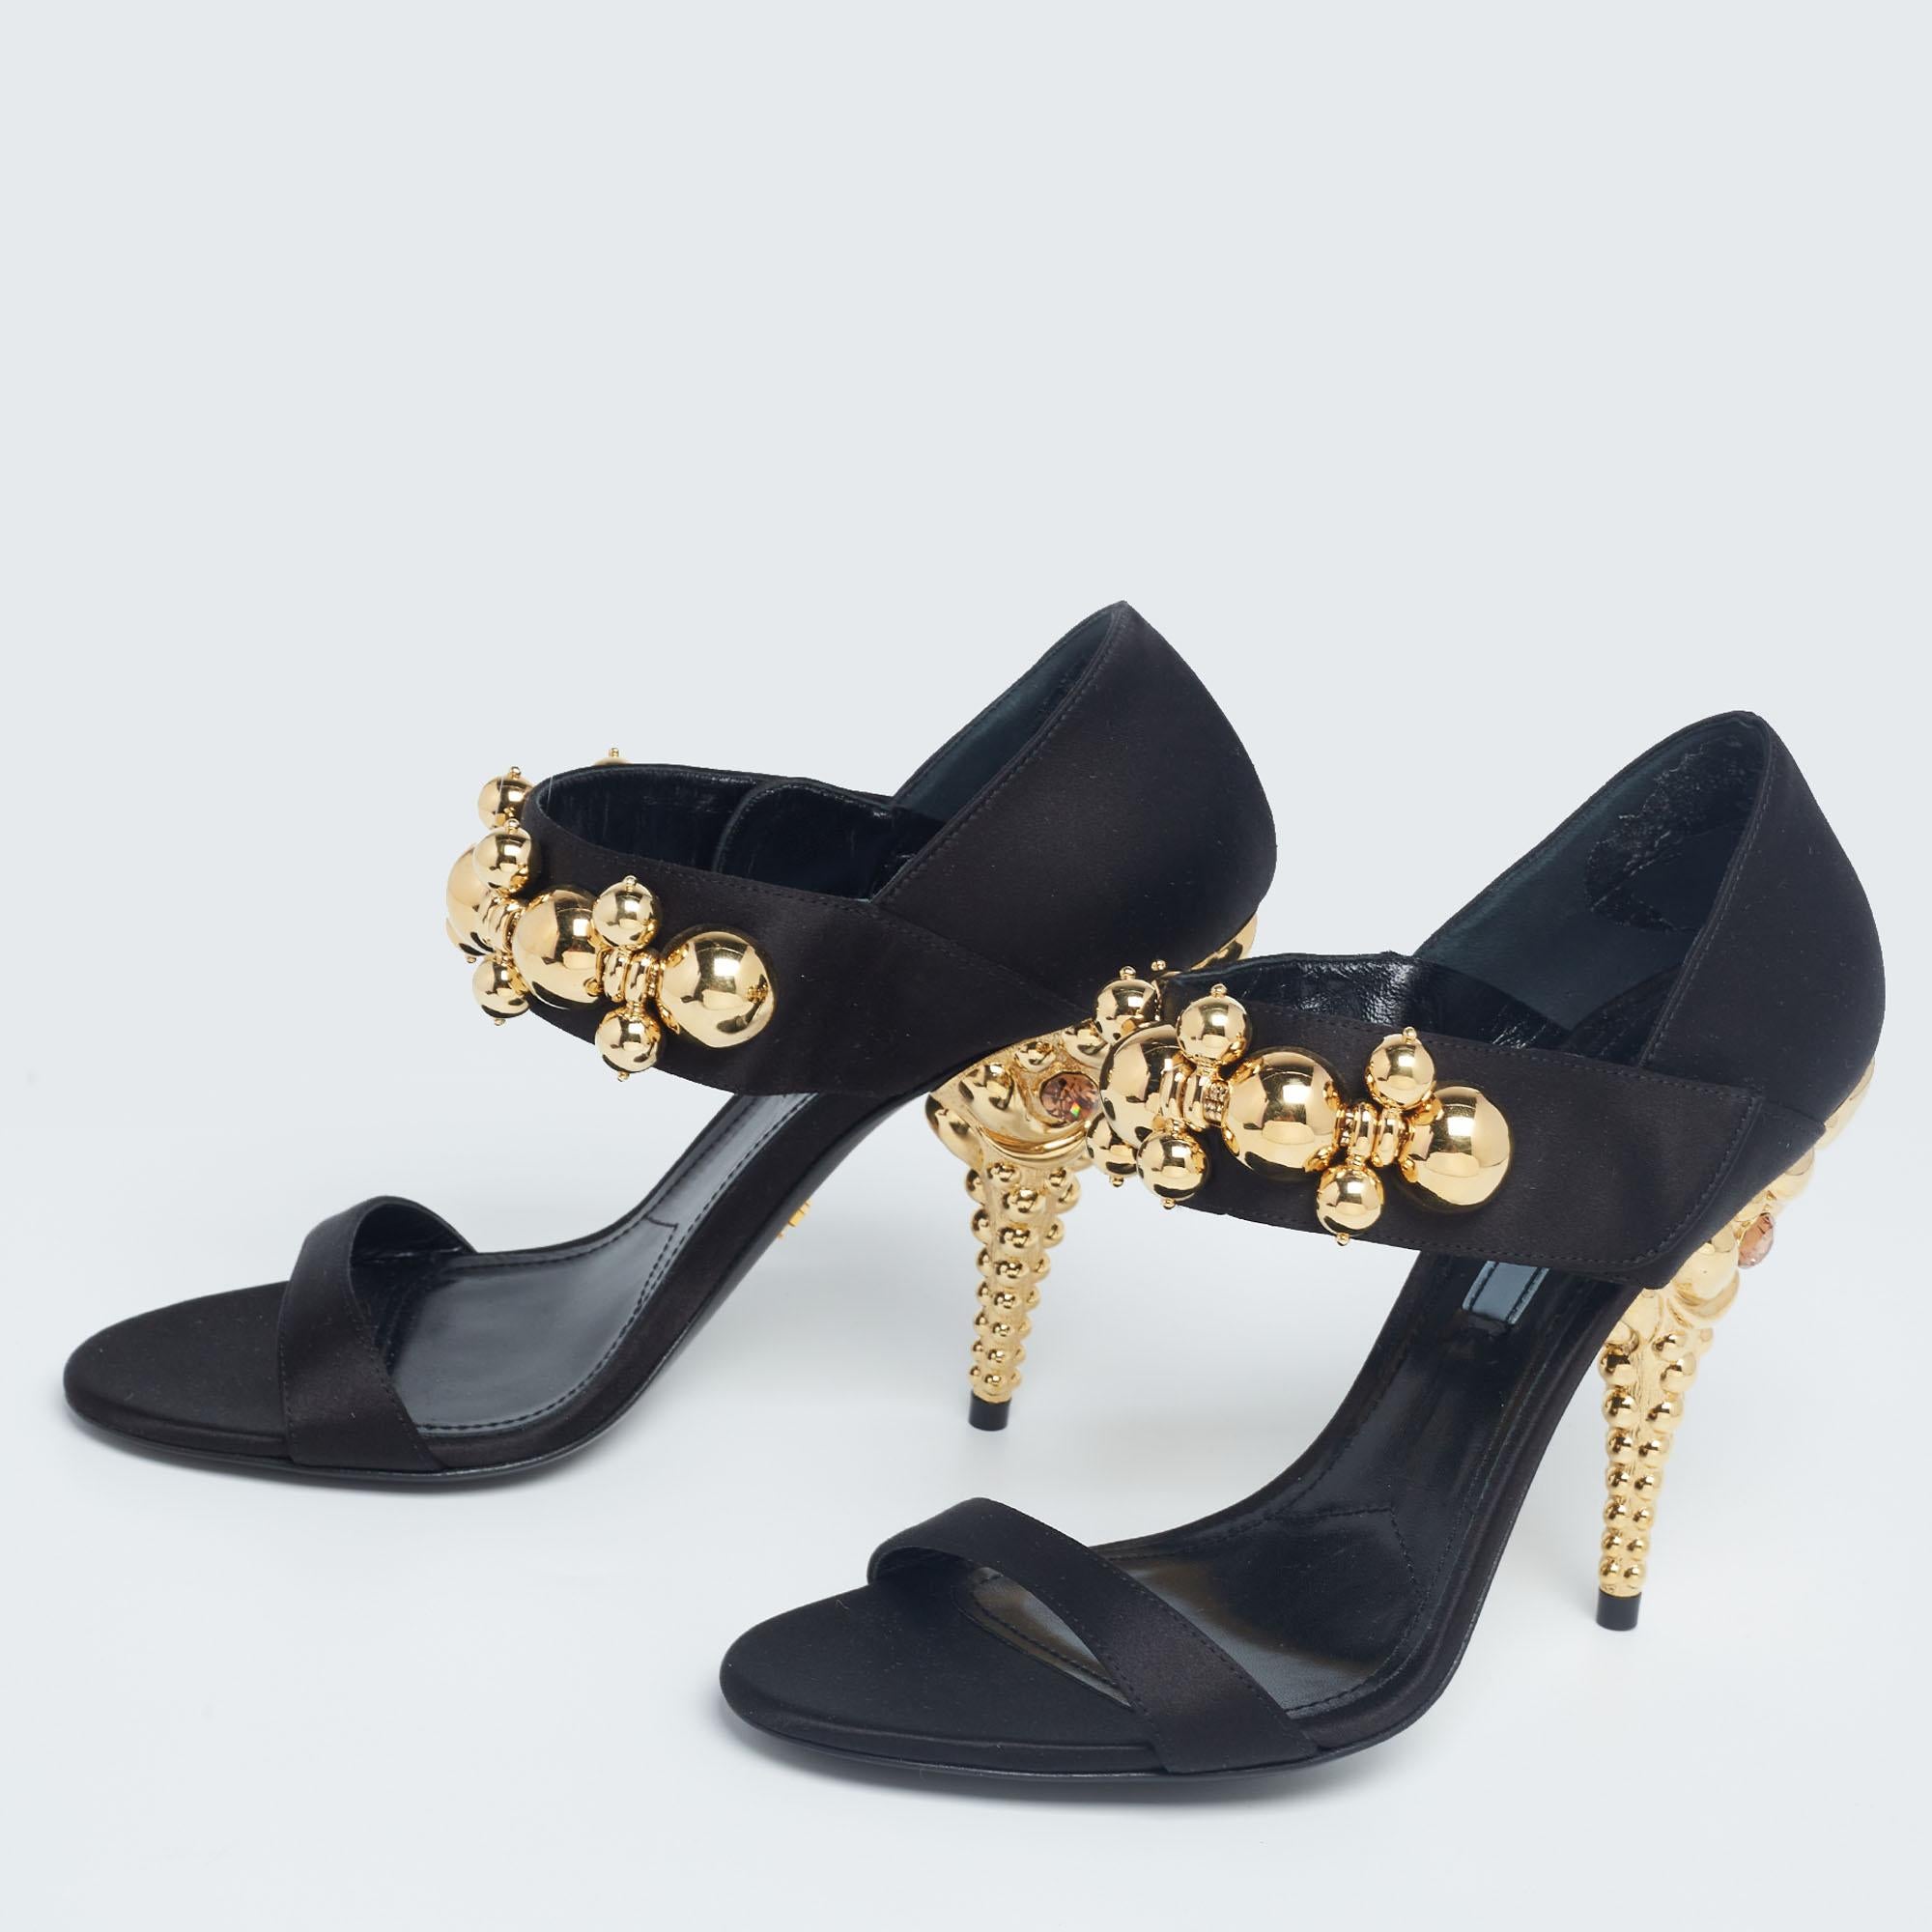 Prada Black Satin Embellished Mary Jane Sandals Size 38 1